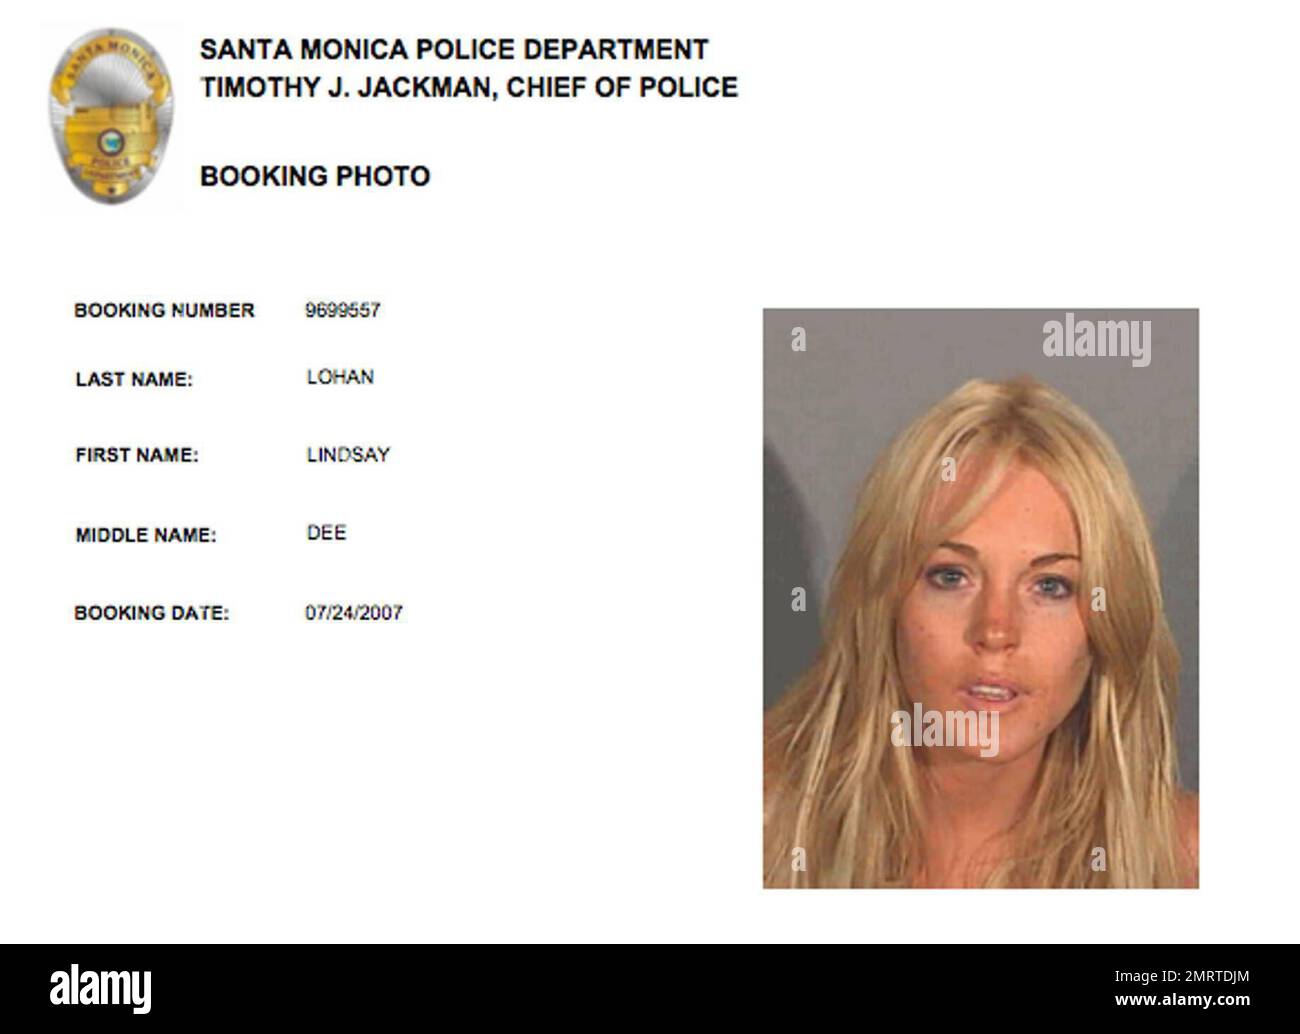 Das gestörte hollywood-Star Lindsay Lohan wurde zum zweiten Mal innerhalb von Monaten wegen Trunkenheit am Steuer in Santa Monica, Kalifornien, verhaftet. Dienstagmorgen früh wegen Besitz von Kokain, unter Einfluss von Drogen, Transport eines Betäubungsmittels in eine Gefängniseinrichtung und Fahren mit einem ausgesetzten Führerschein. Berichte sagen es. Lohans Blutalkoholspiegel lag zwischen .12 und 13, weit über der gesetzlichen Grenze von .08, und Kokain wurde in ihrer Hosentasche gefunden. Lohan hat sich am 13. Juli nach einem Aufenthalt von mehr als sechs Wochen aus dem Promise Rehabilitationszentrum ausgecheckt. Sie trägt einen Knöchel, der Alkohol überwacht Stockfoto